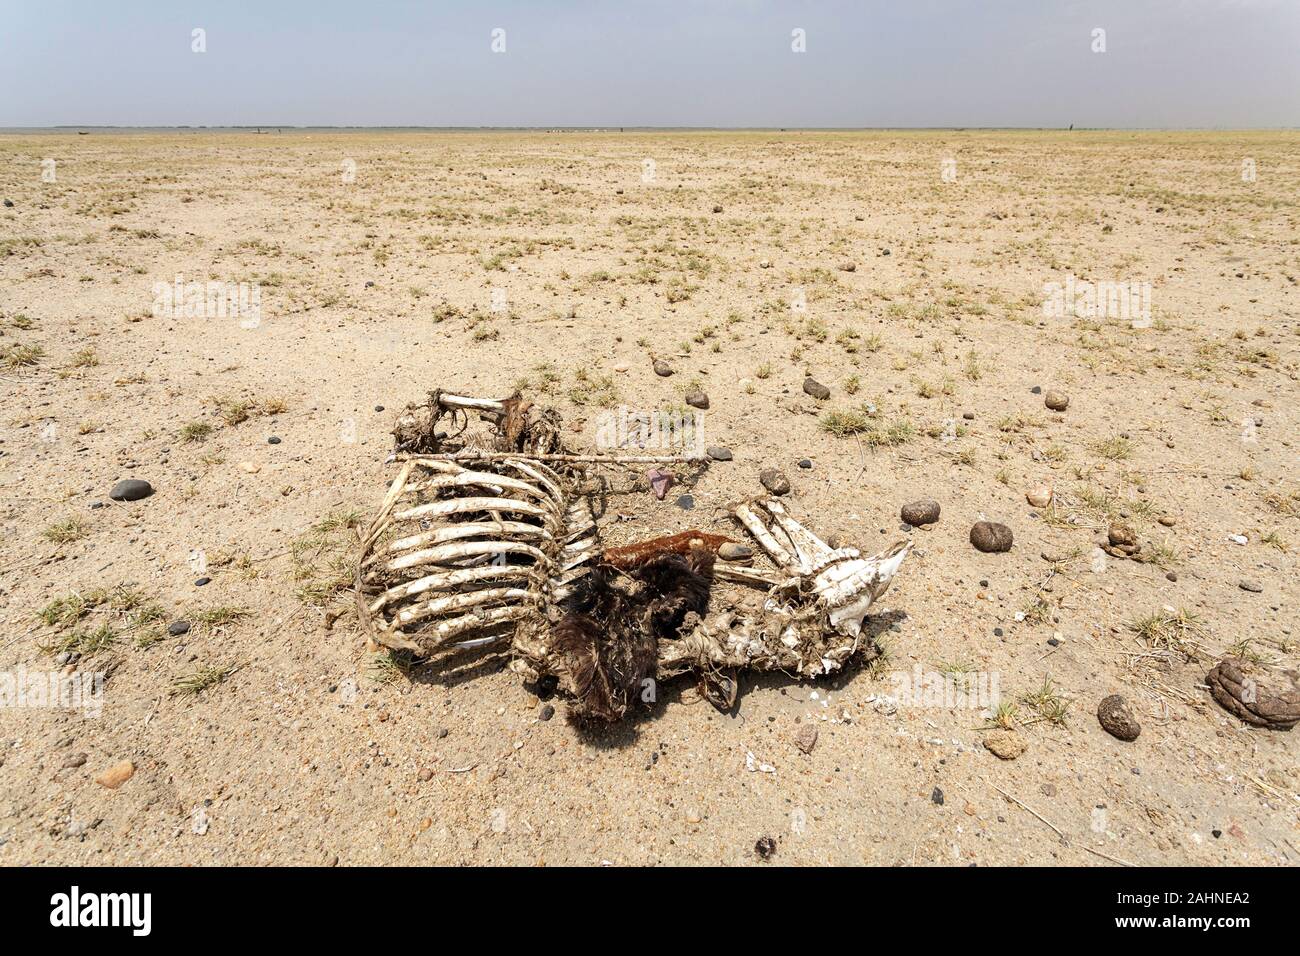 Skelett eines toten Tieres in der Wüste nahe dem Turkana-See, der Grenze Äthiopiens und Kenias Stockfoto